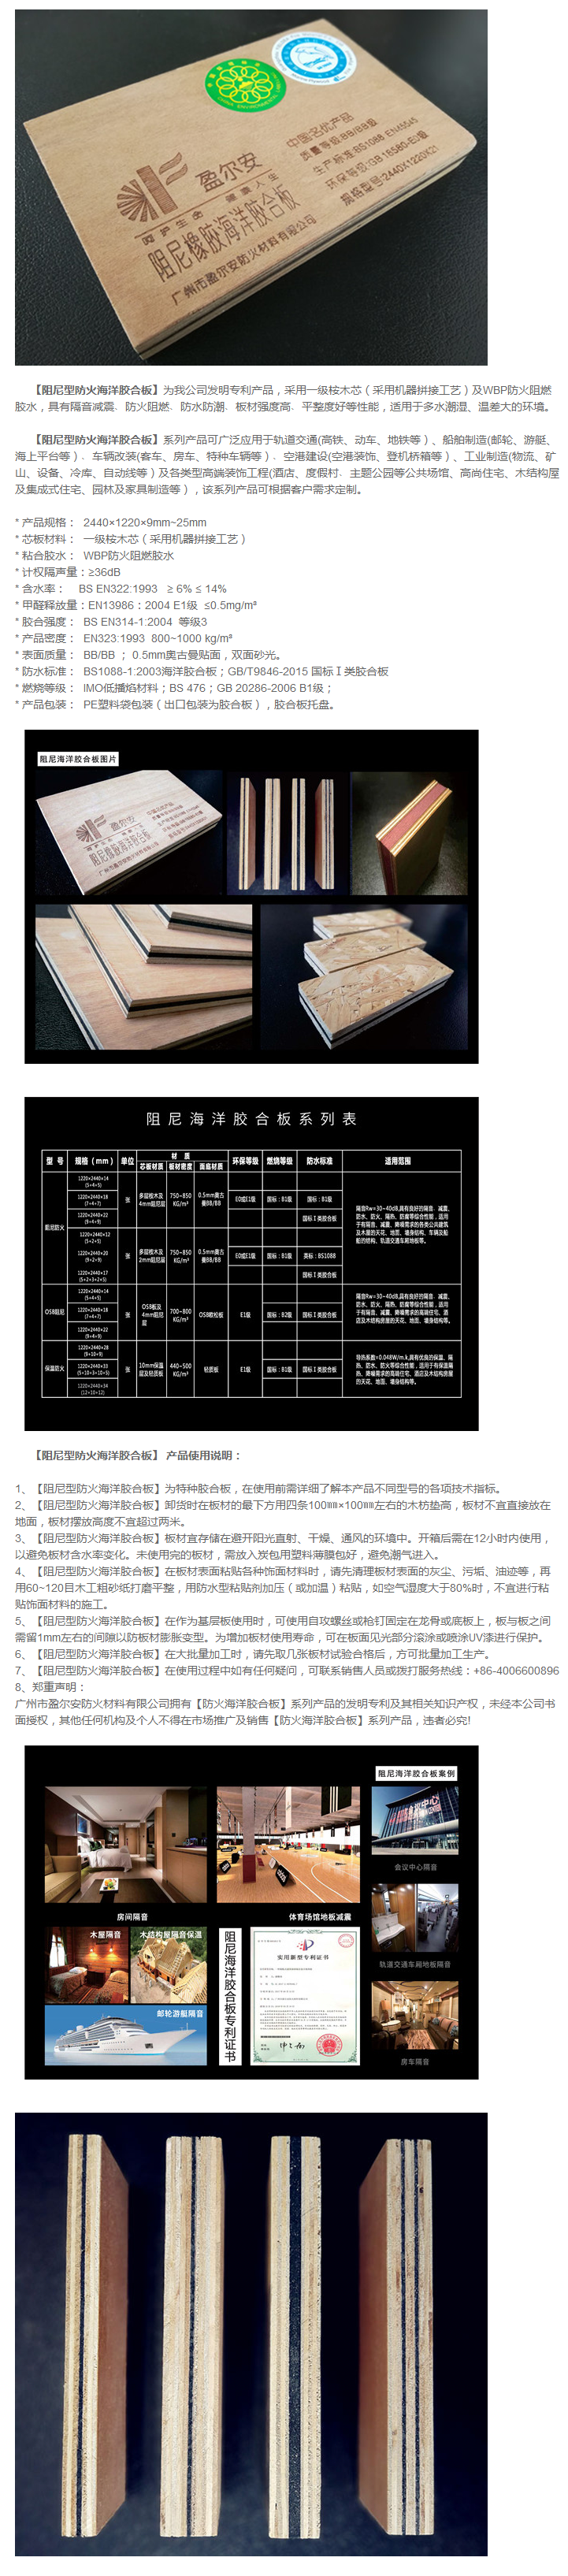 阻尼海洋胶合板系列产品_盈尔安防火材料有限公司.png